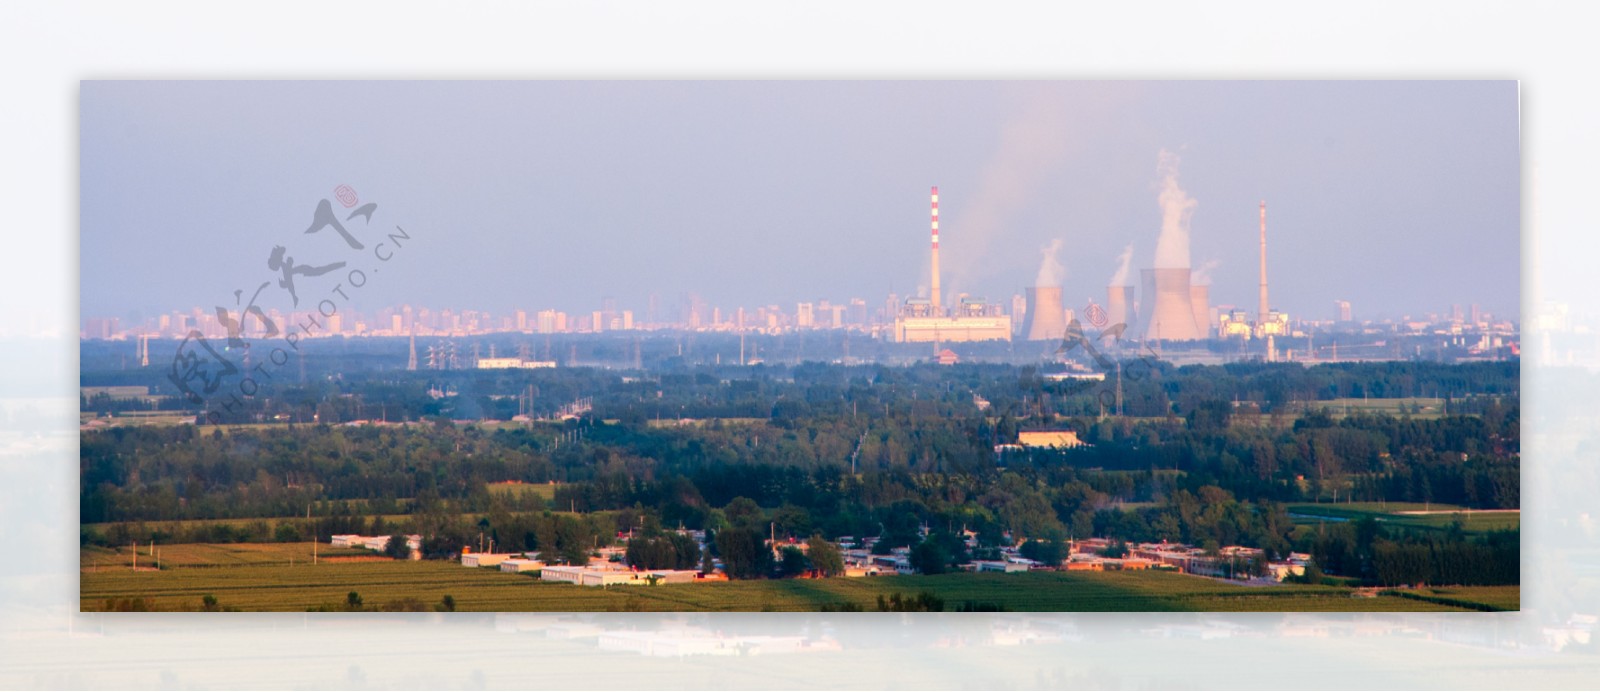 工业生产城市背景图片